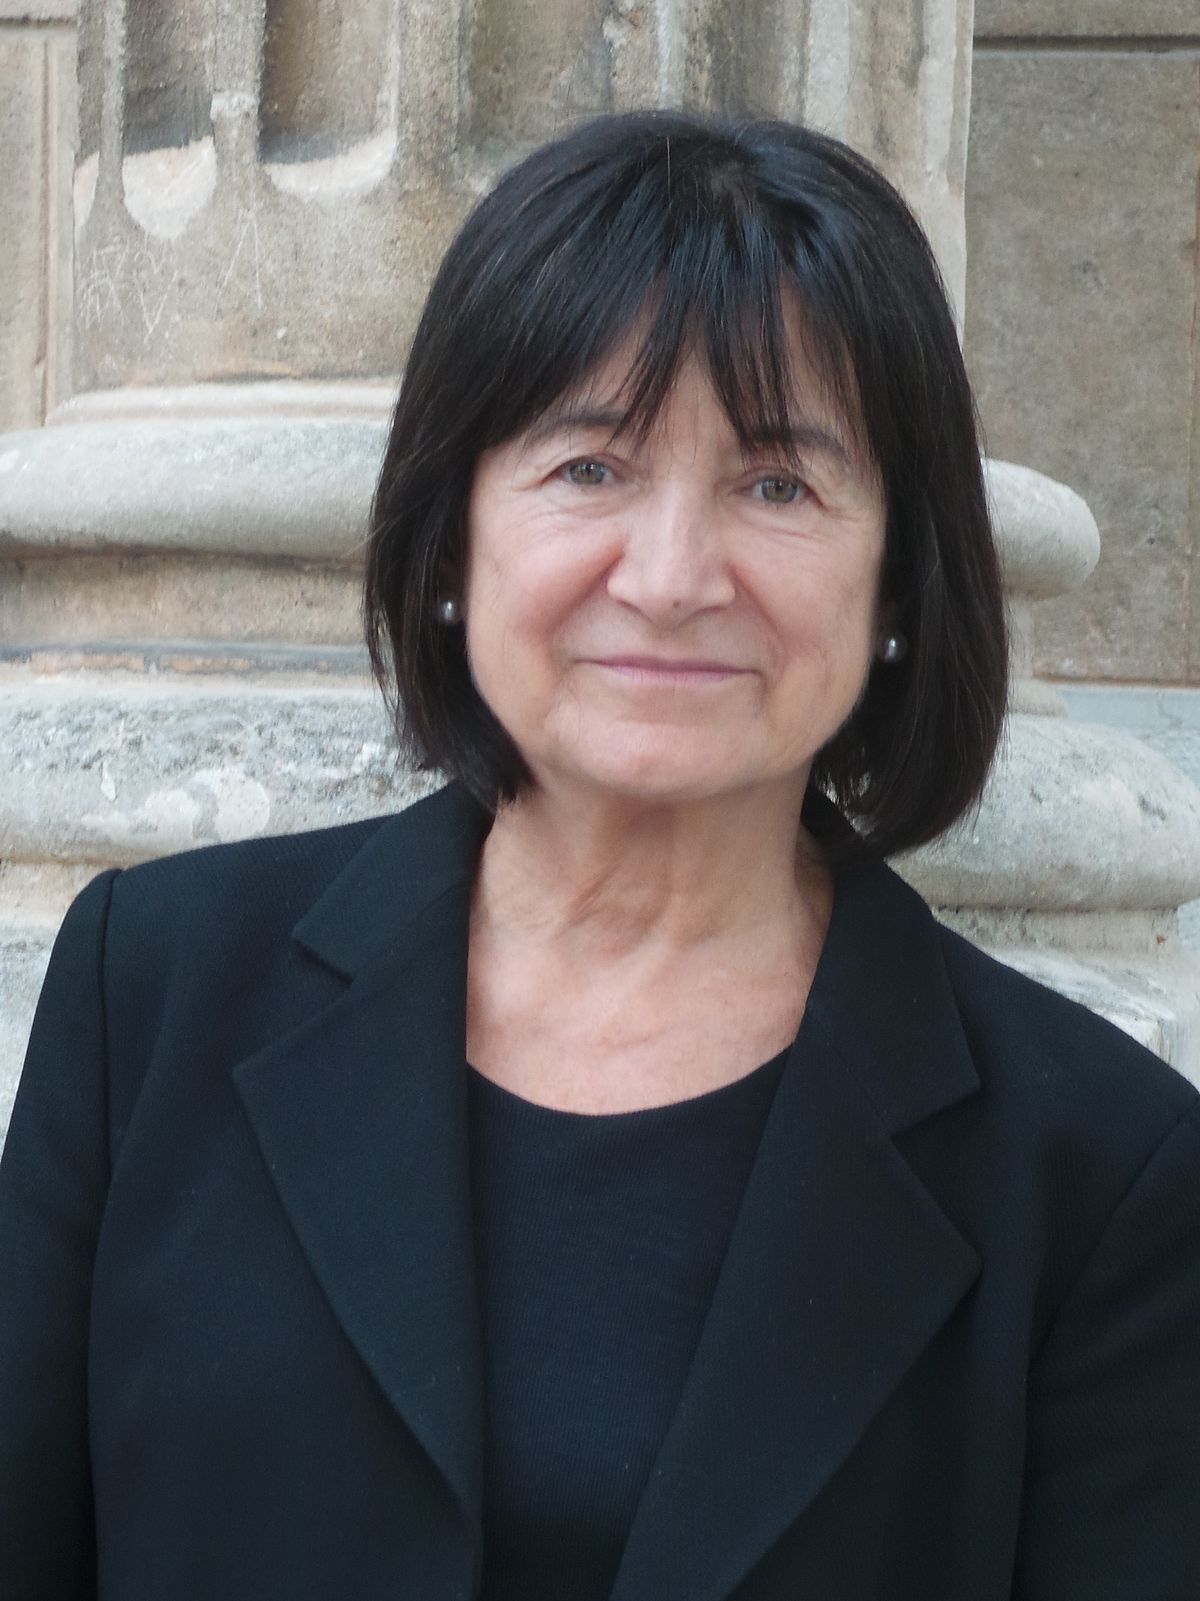 Inés Alberdi, Premio Nacional de Sociología y Ciencia Política 2019 por su trayectoria